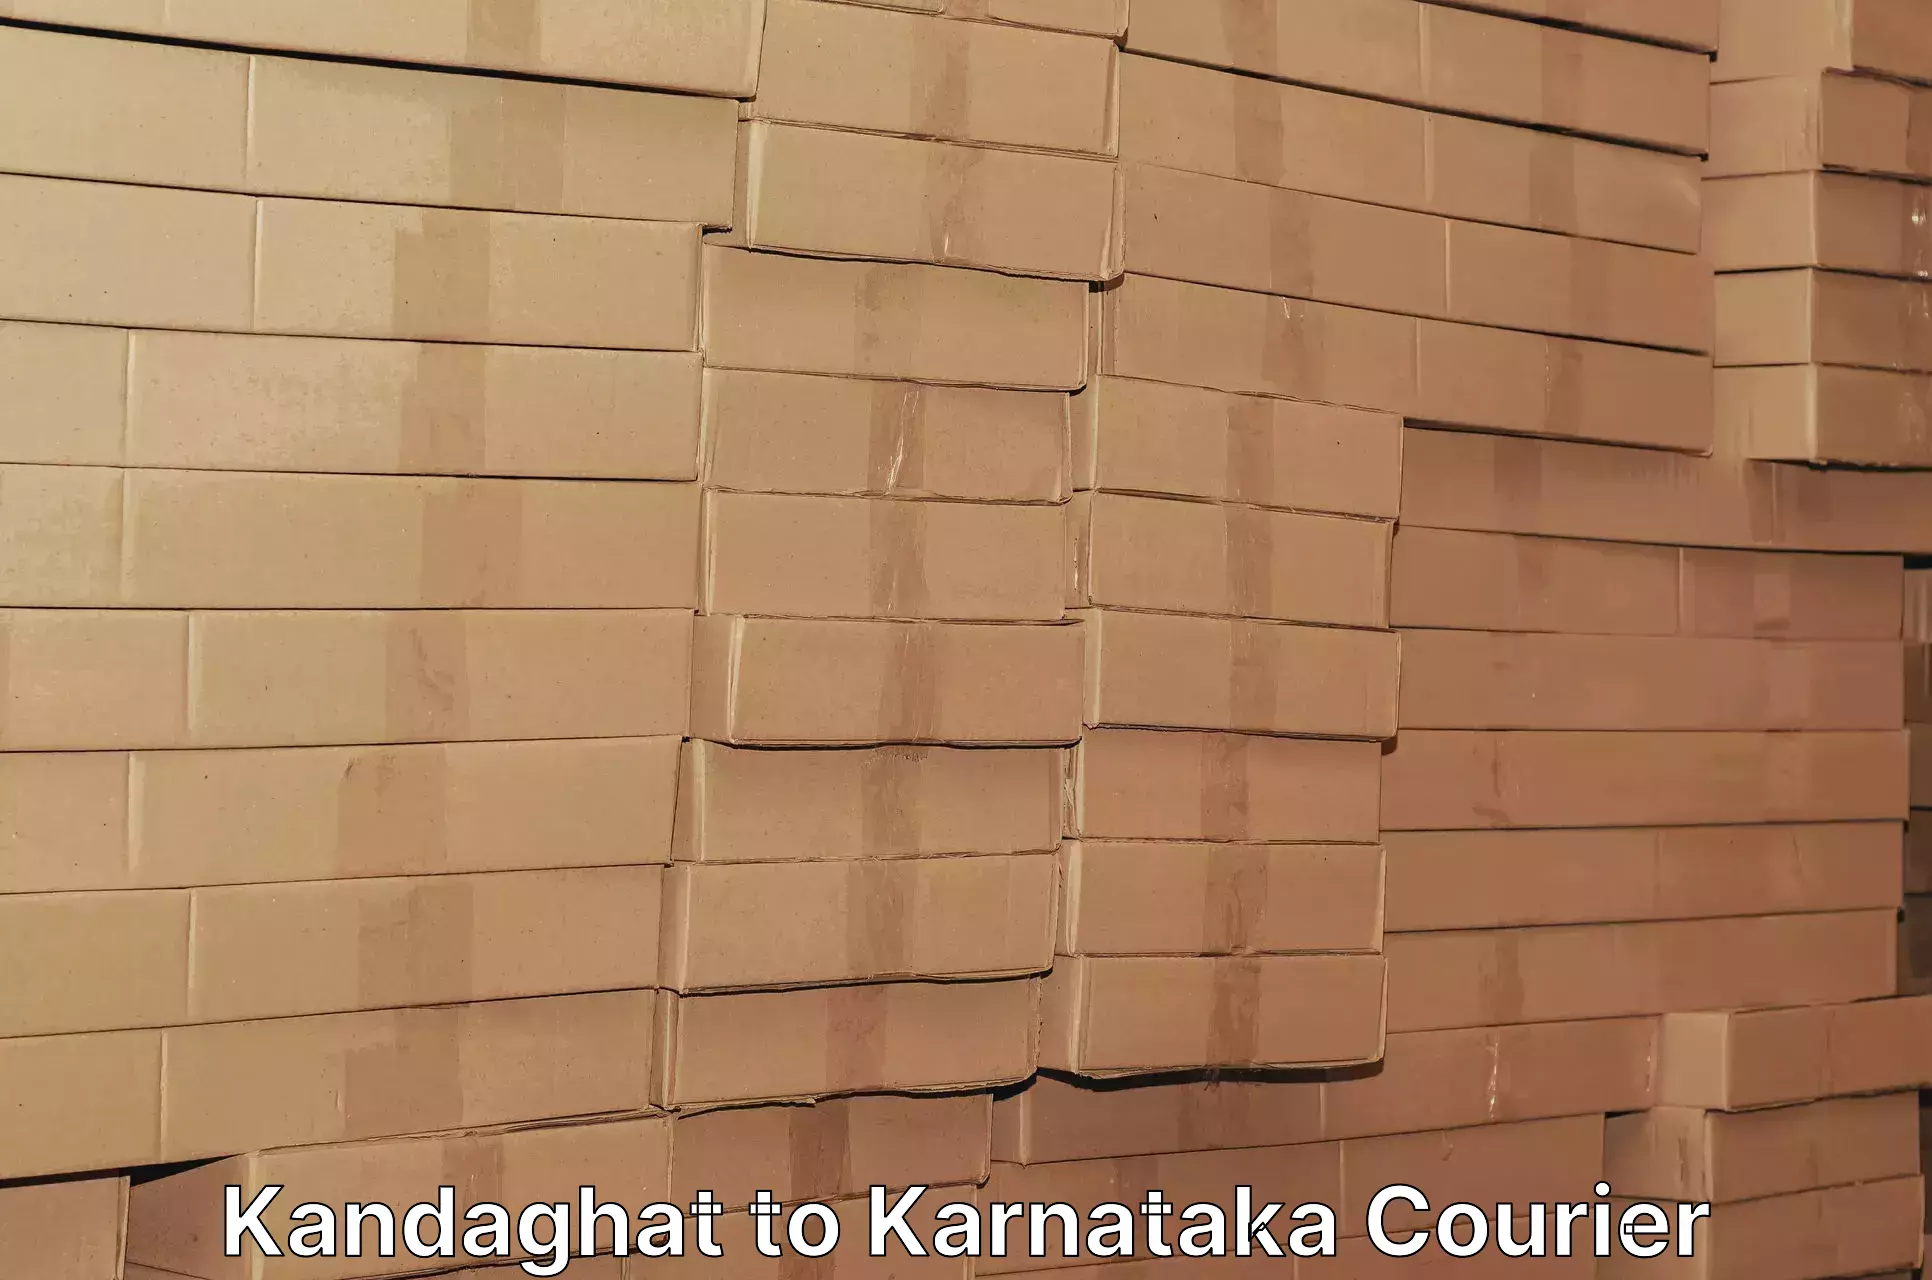 Efficient parcel transport Kandaghat to Hungund